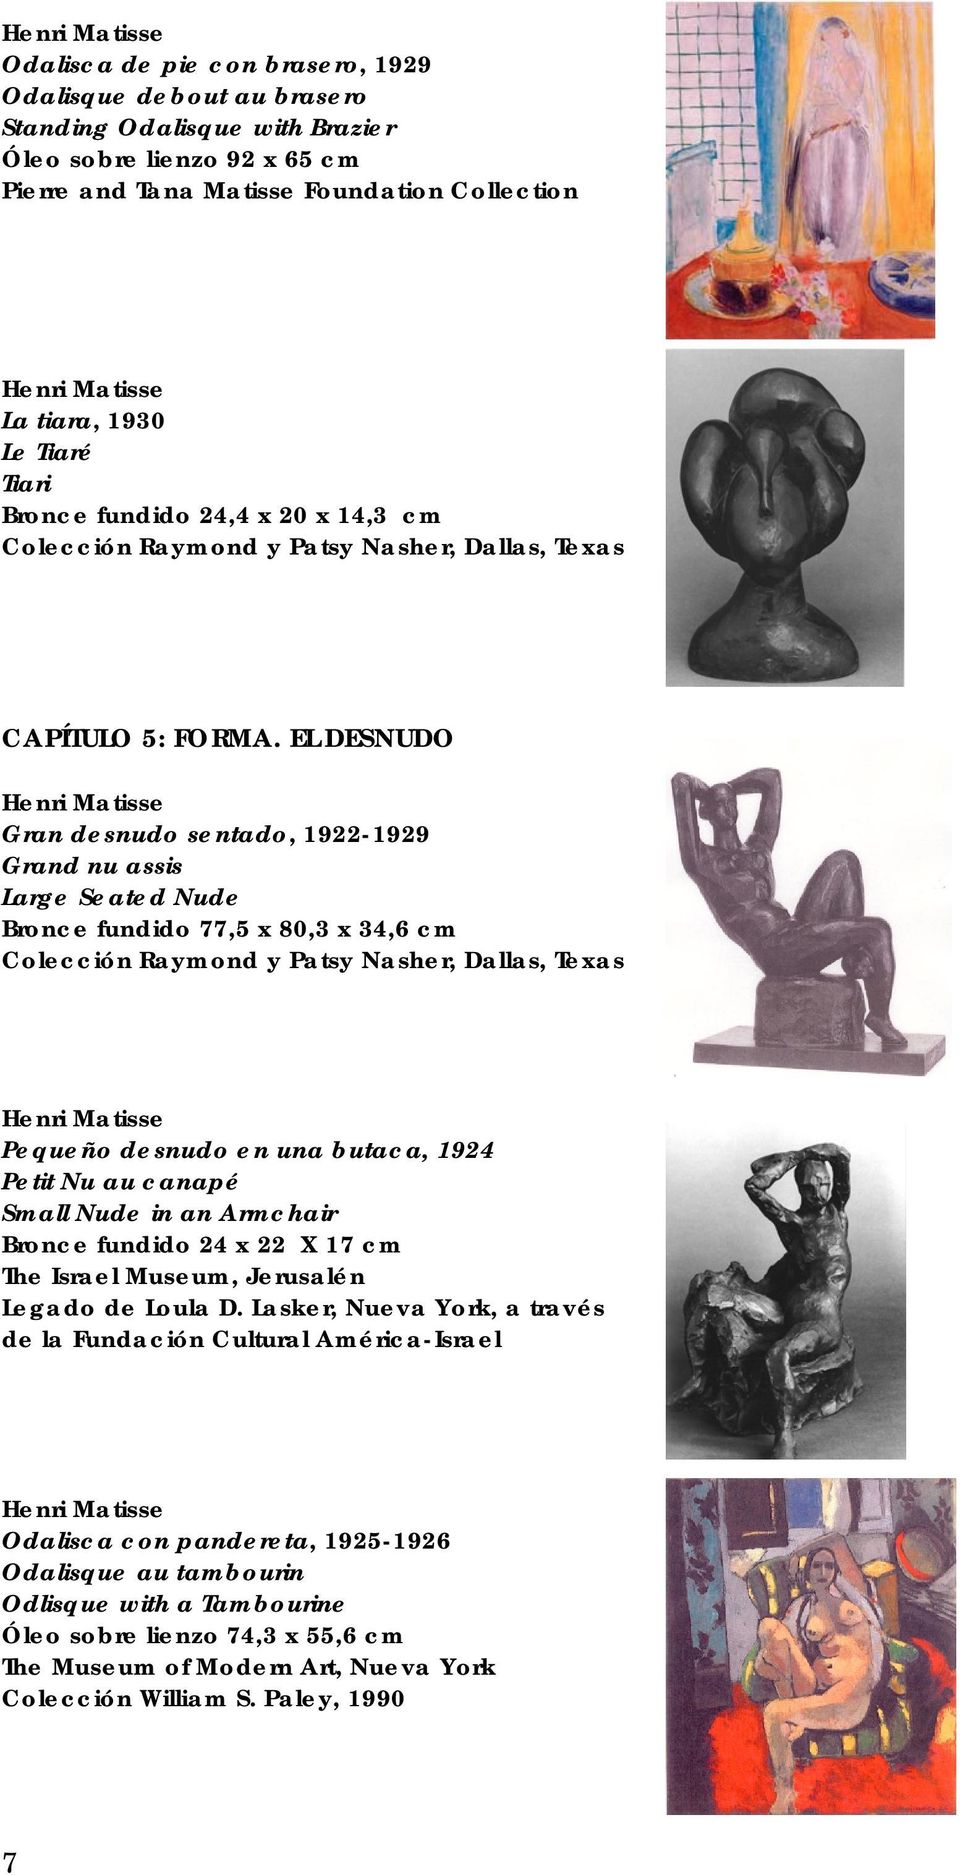 EL DESNUDO Gran desnudo sentado, 1922-1929 Grand nu assis Large Seated Nude Bronce fundido 77,5 x 80,3 x 34,6 cm Colección Raymond y Patsy Nasher, Dallas, Texas Pequeño desnudo en una butaca, 1924